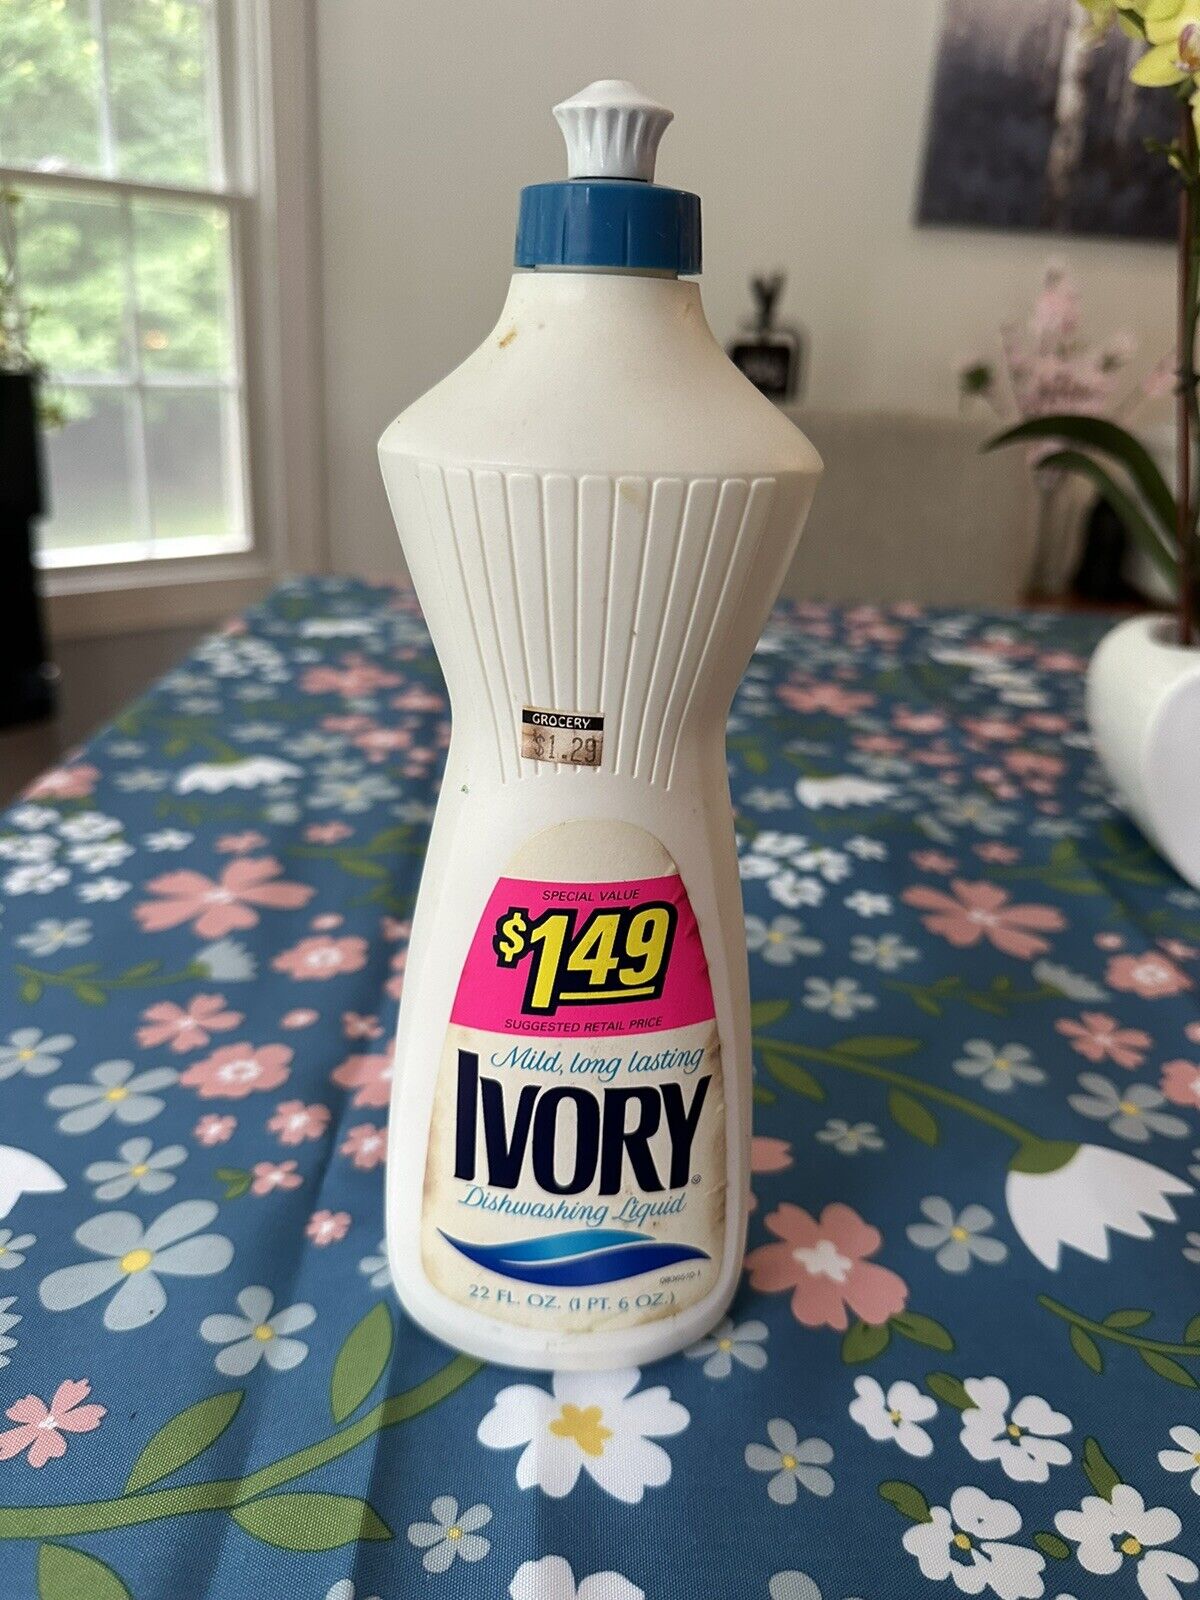 Ivory dishwashing dish soap liquid 22 oz full vntg 1986 MOVIE PROP GUC